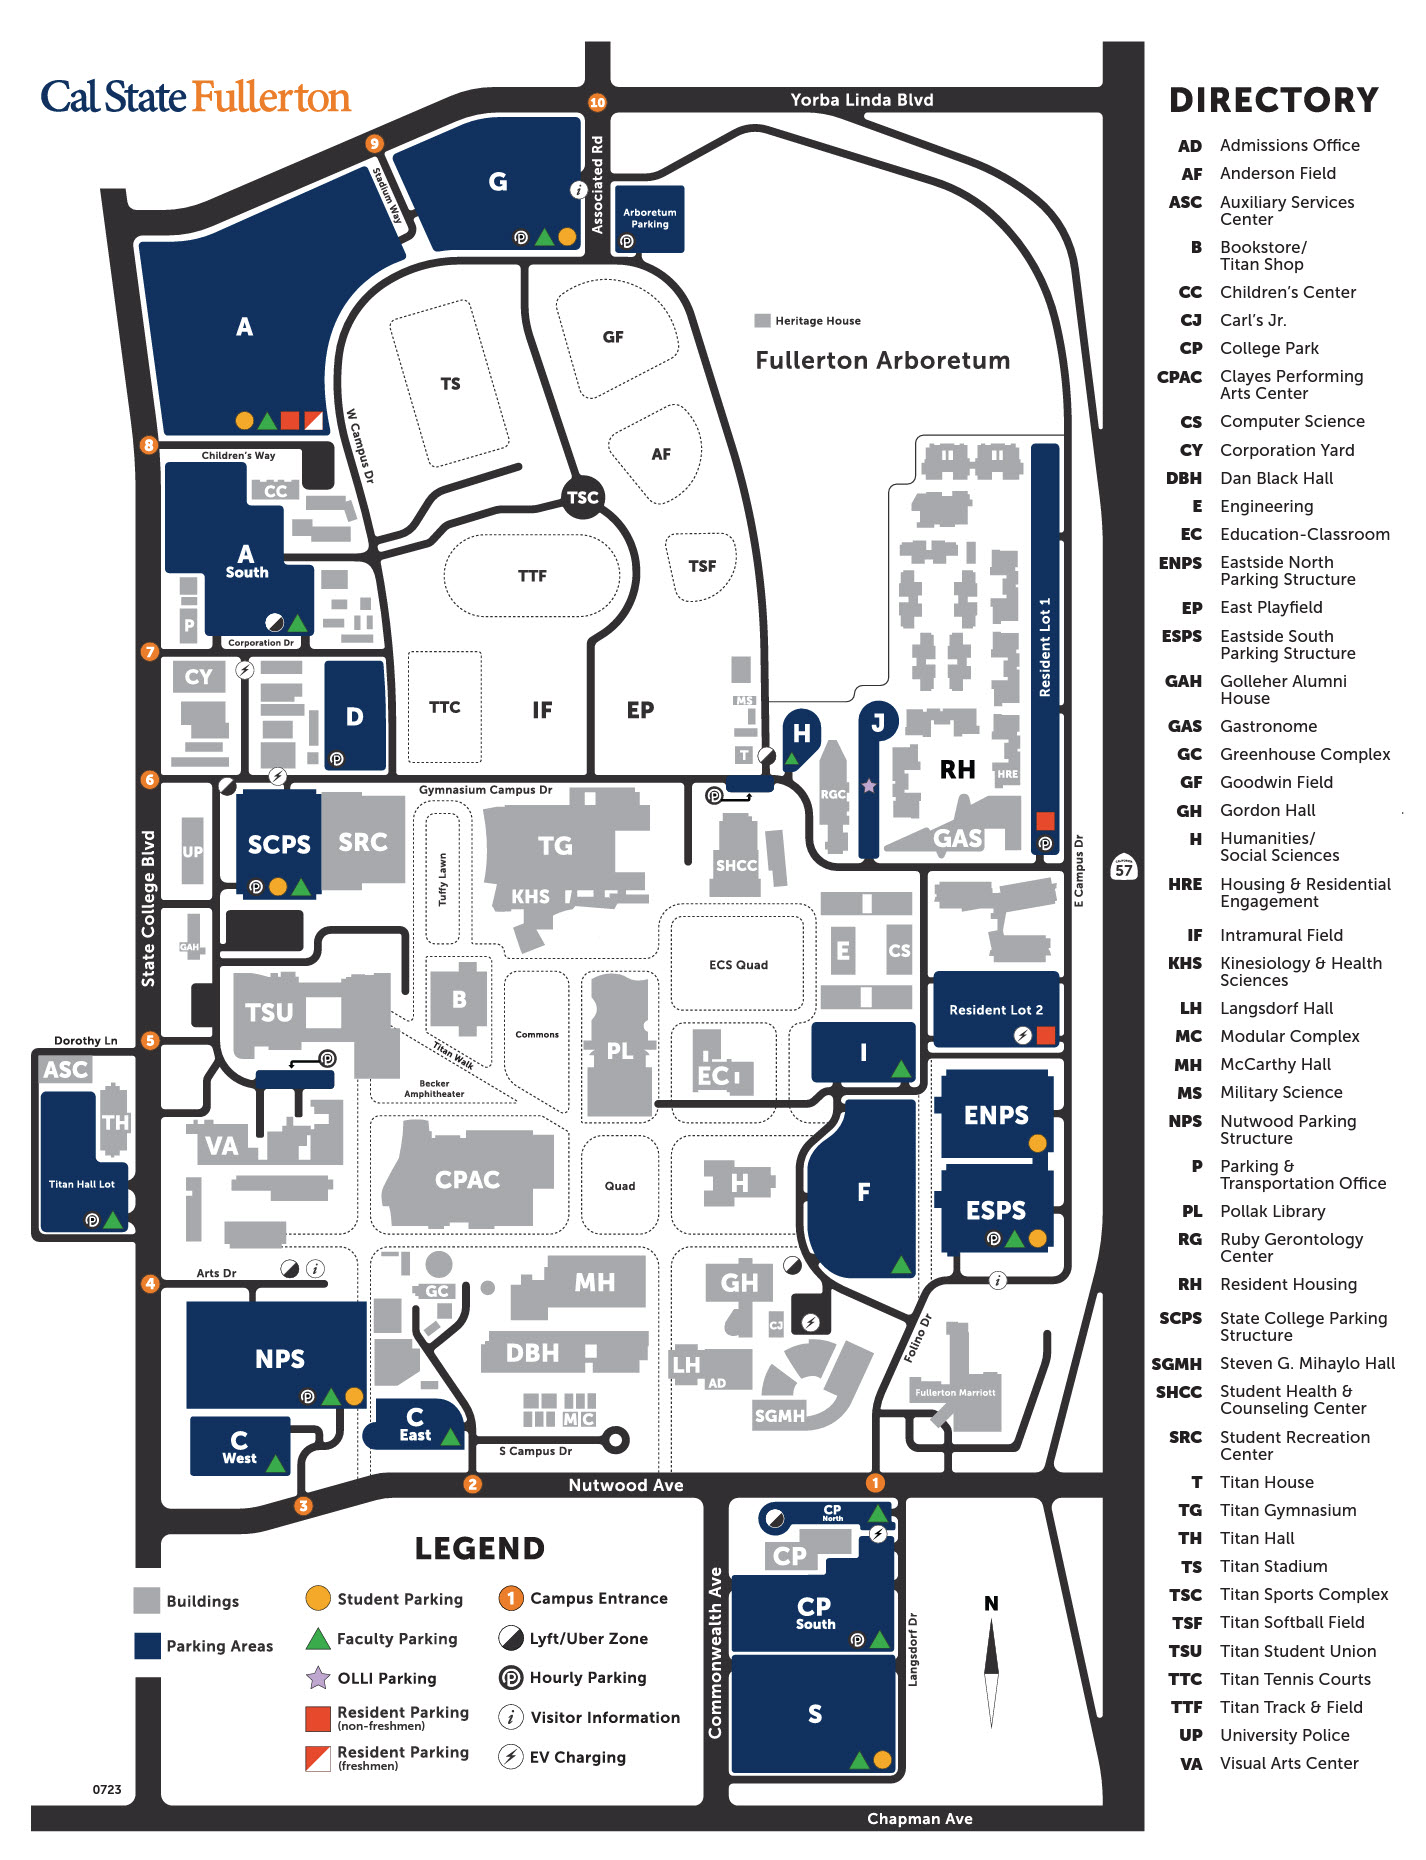 CSUF Campus Map